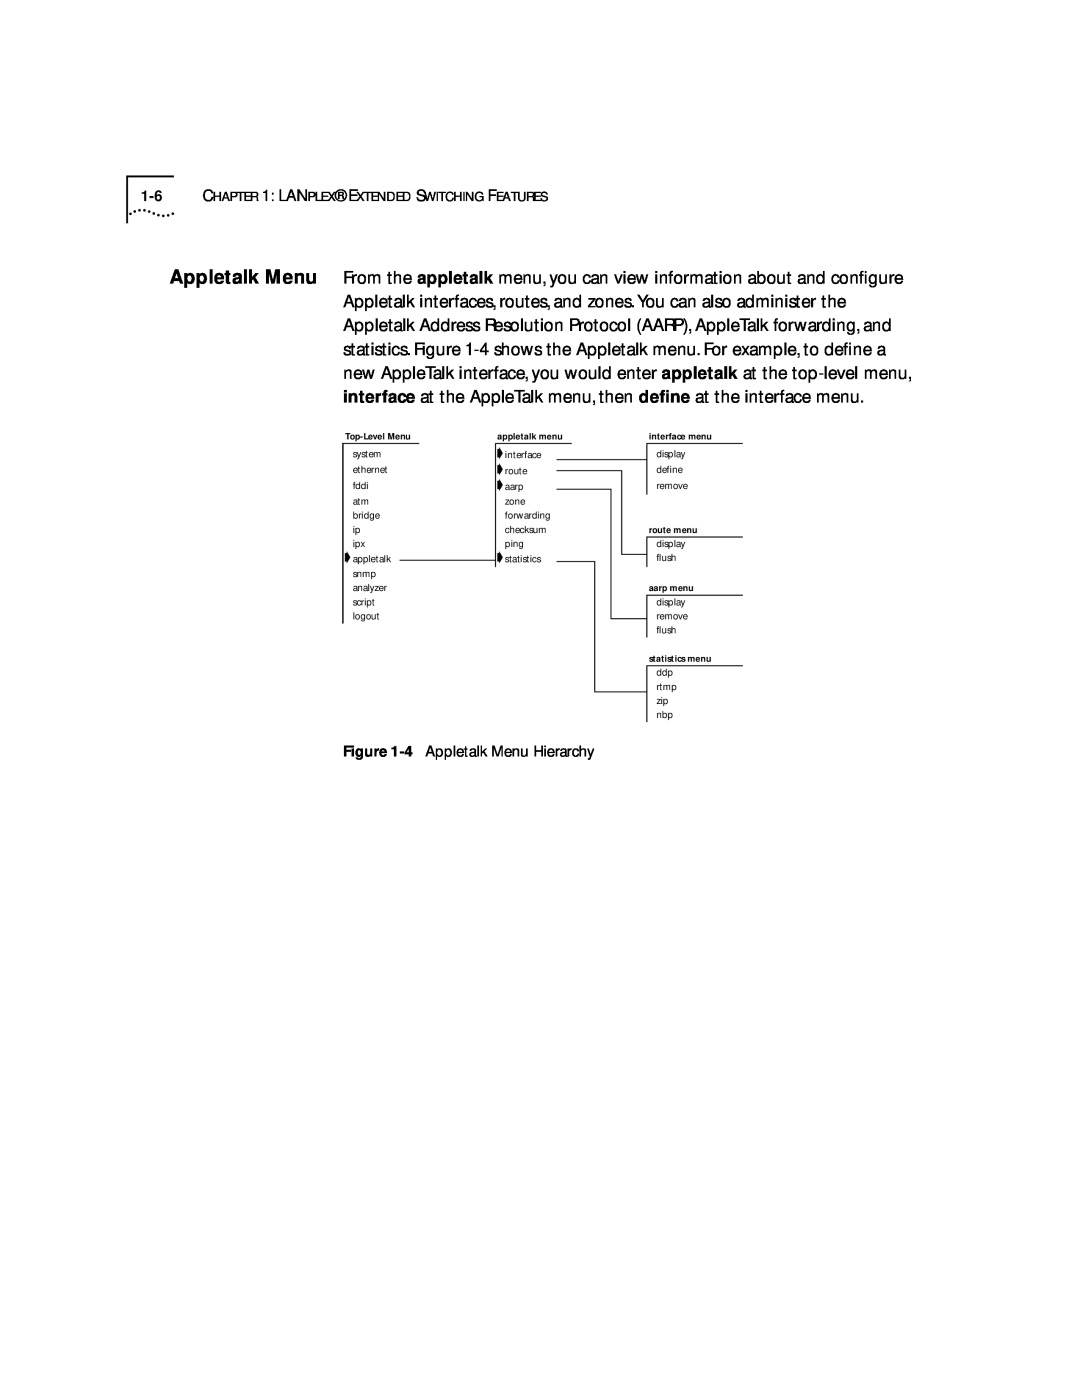 3Com 2500 manual 4 Appletalk Menu Hierarchy 